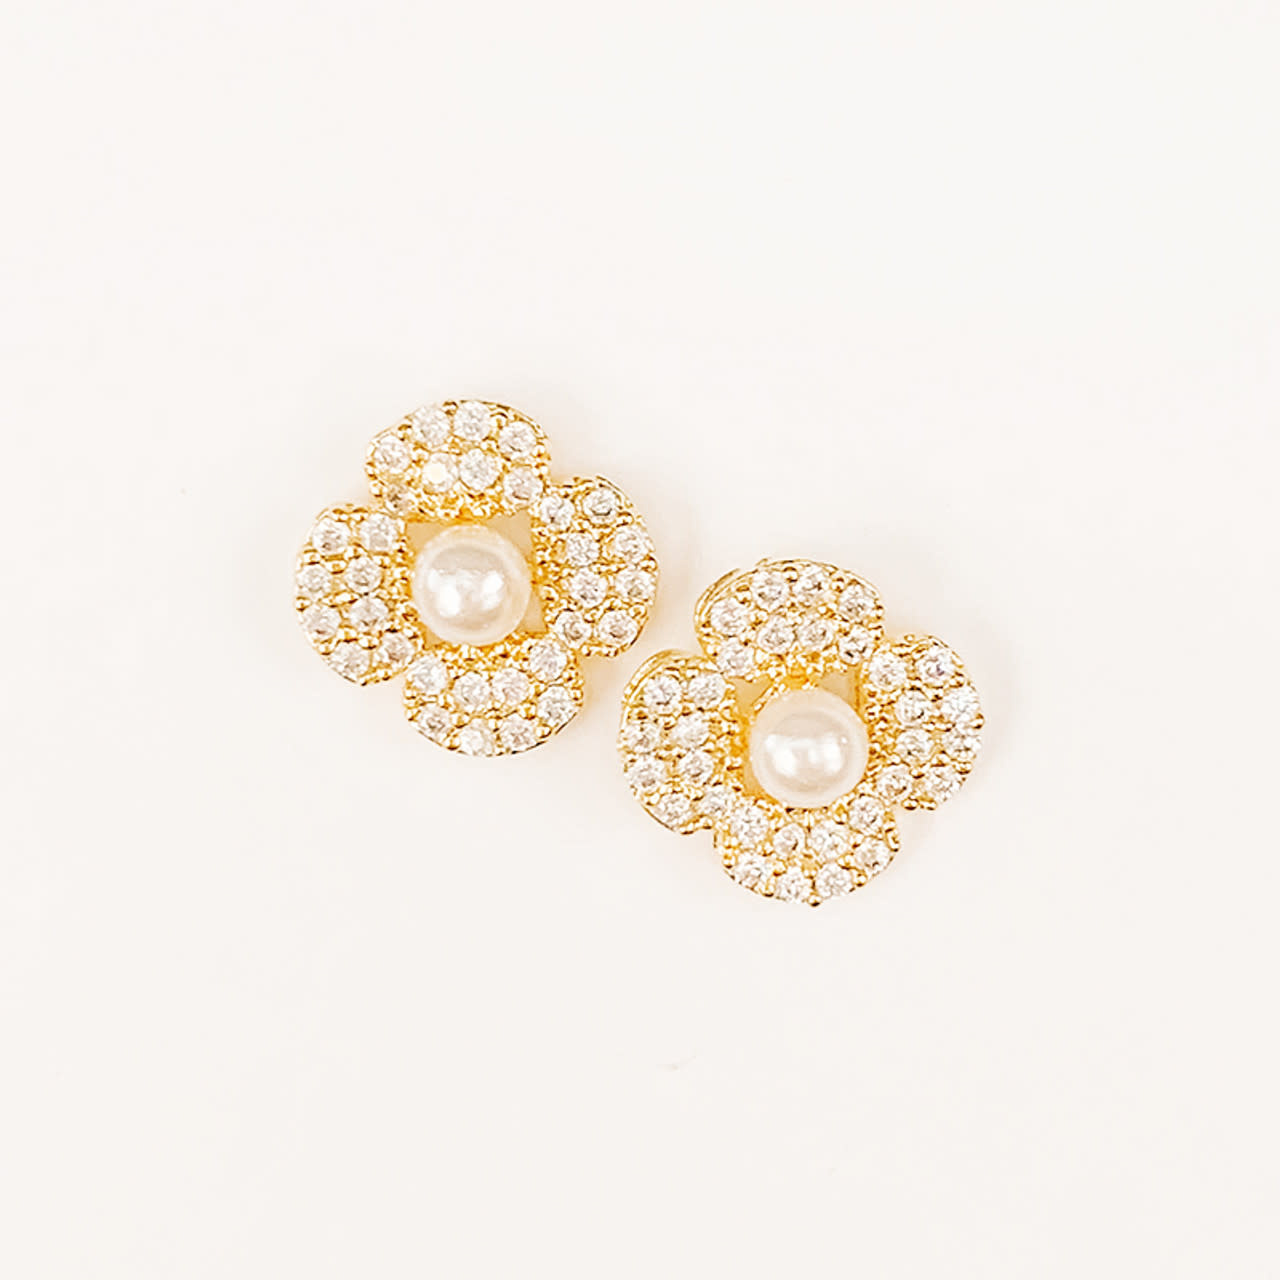 Lou & Co. Cubic Zirconia & Pearl Flower Stud Earrings